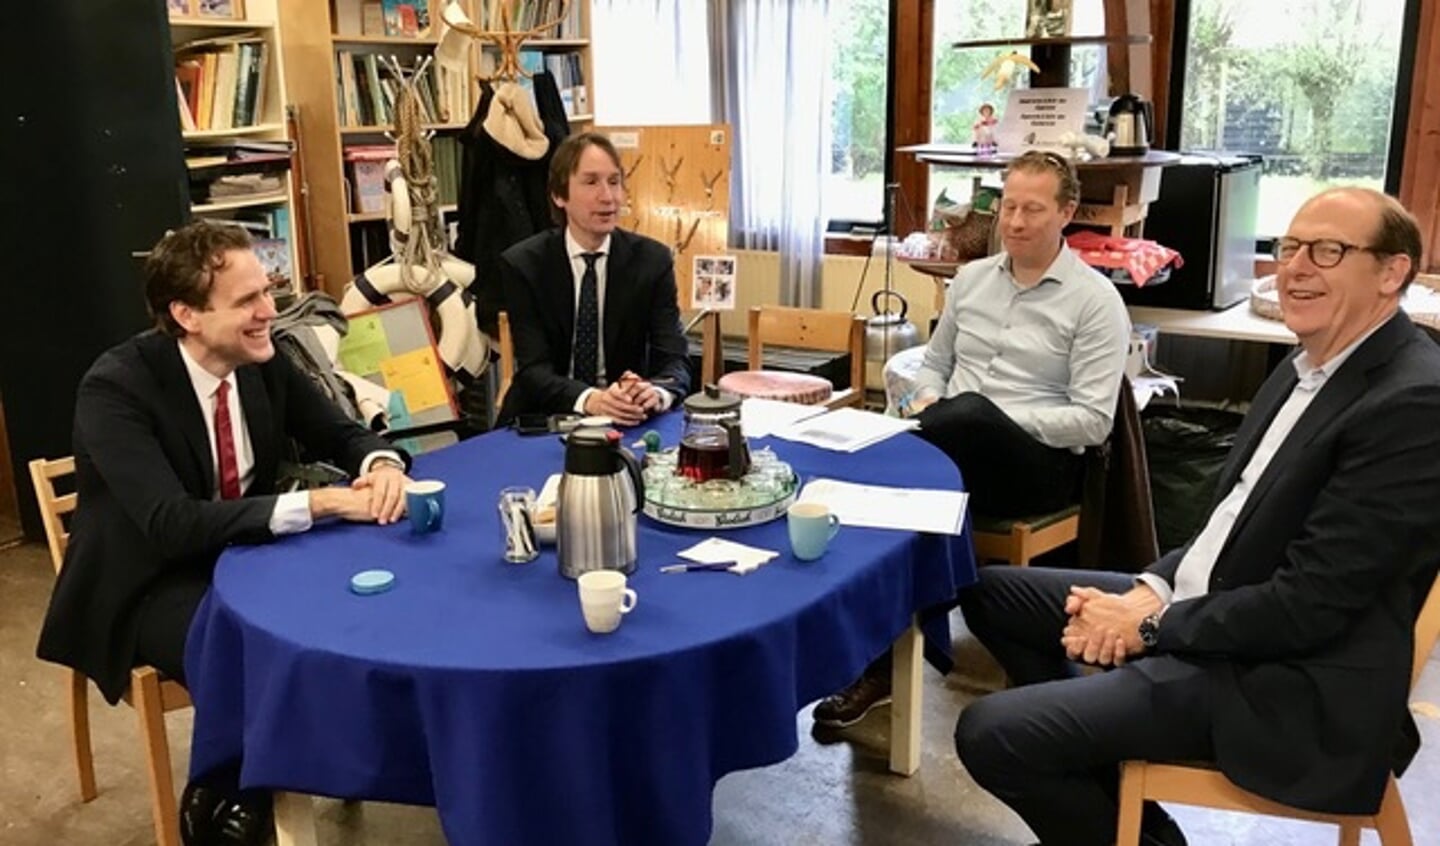 De wethouders Marijn van Ballegooijen, Herbert Raat, Frank Berkhout en Jan Kooiker van Rotary Amstelveen-Amstel.